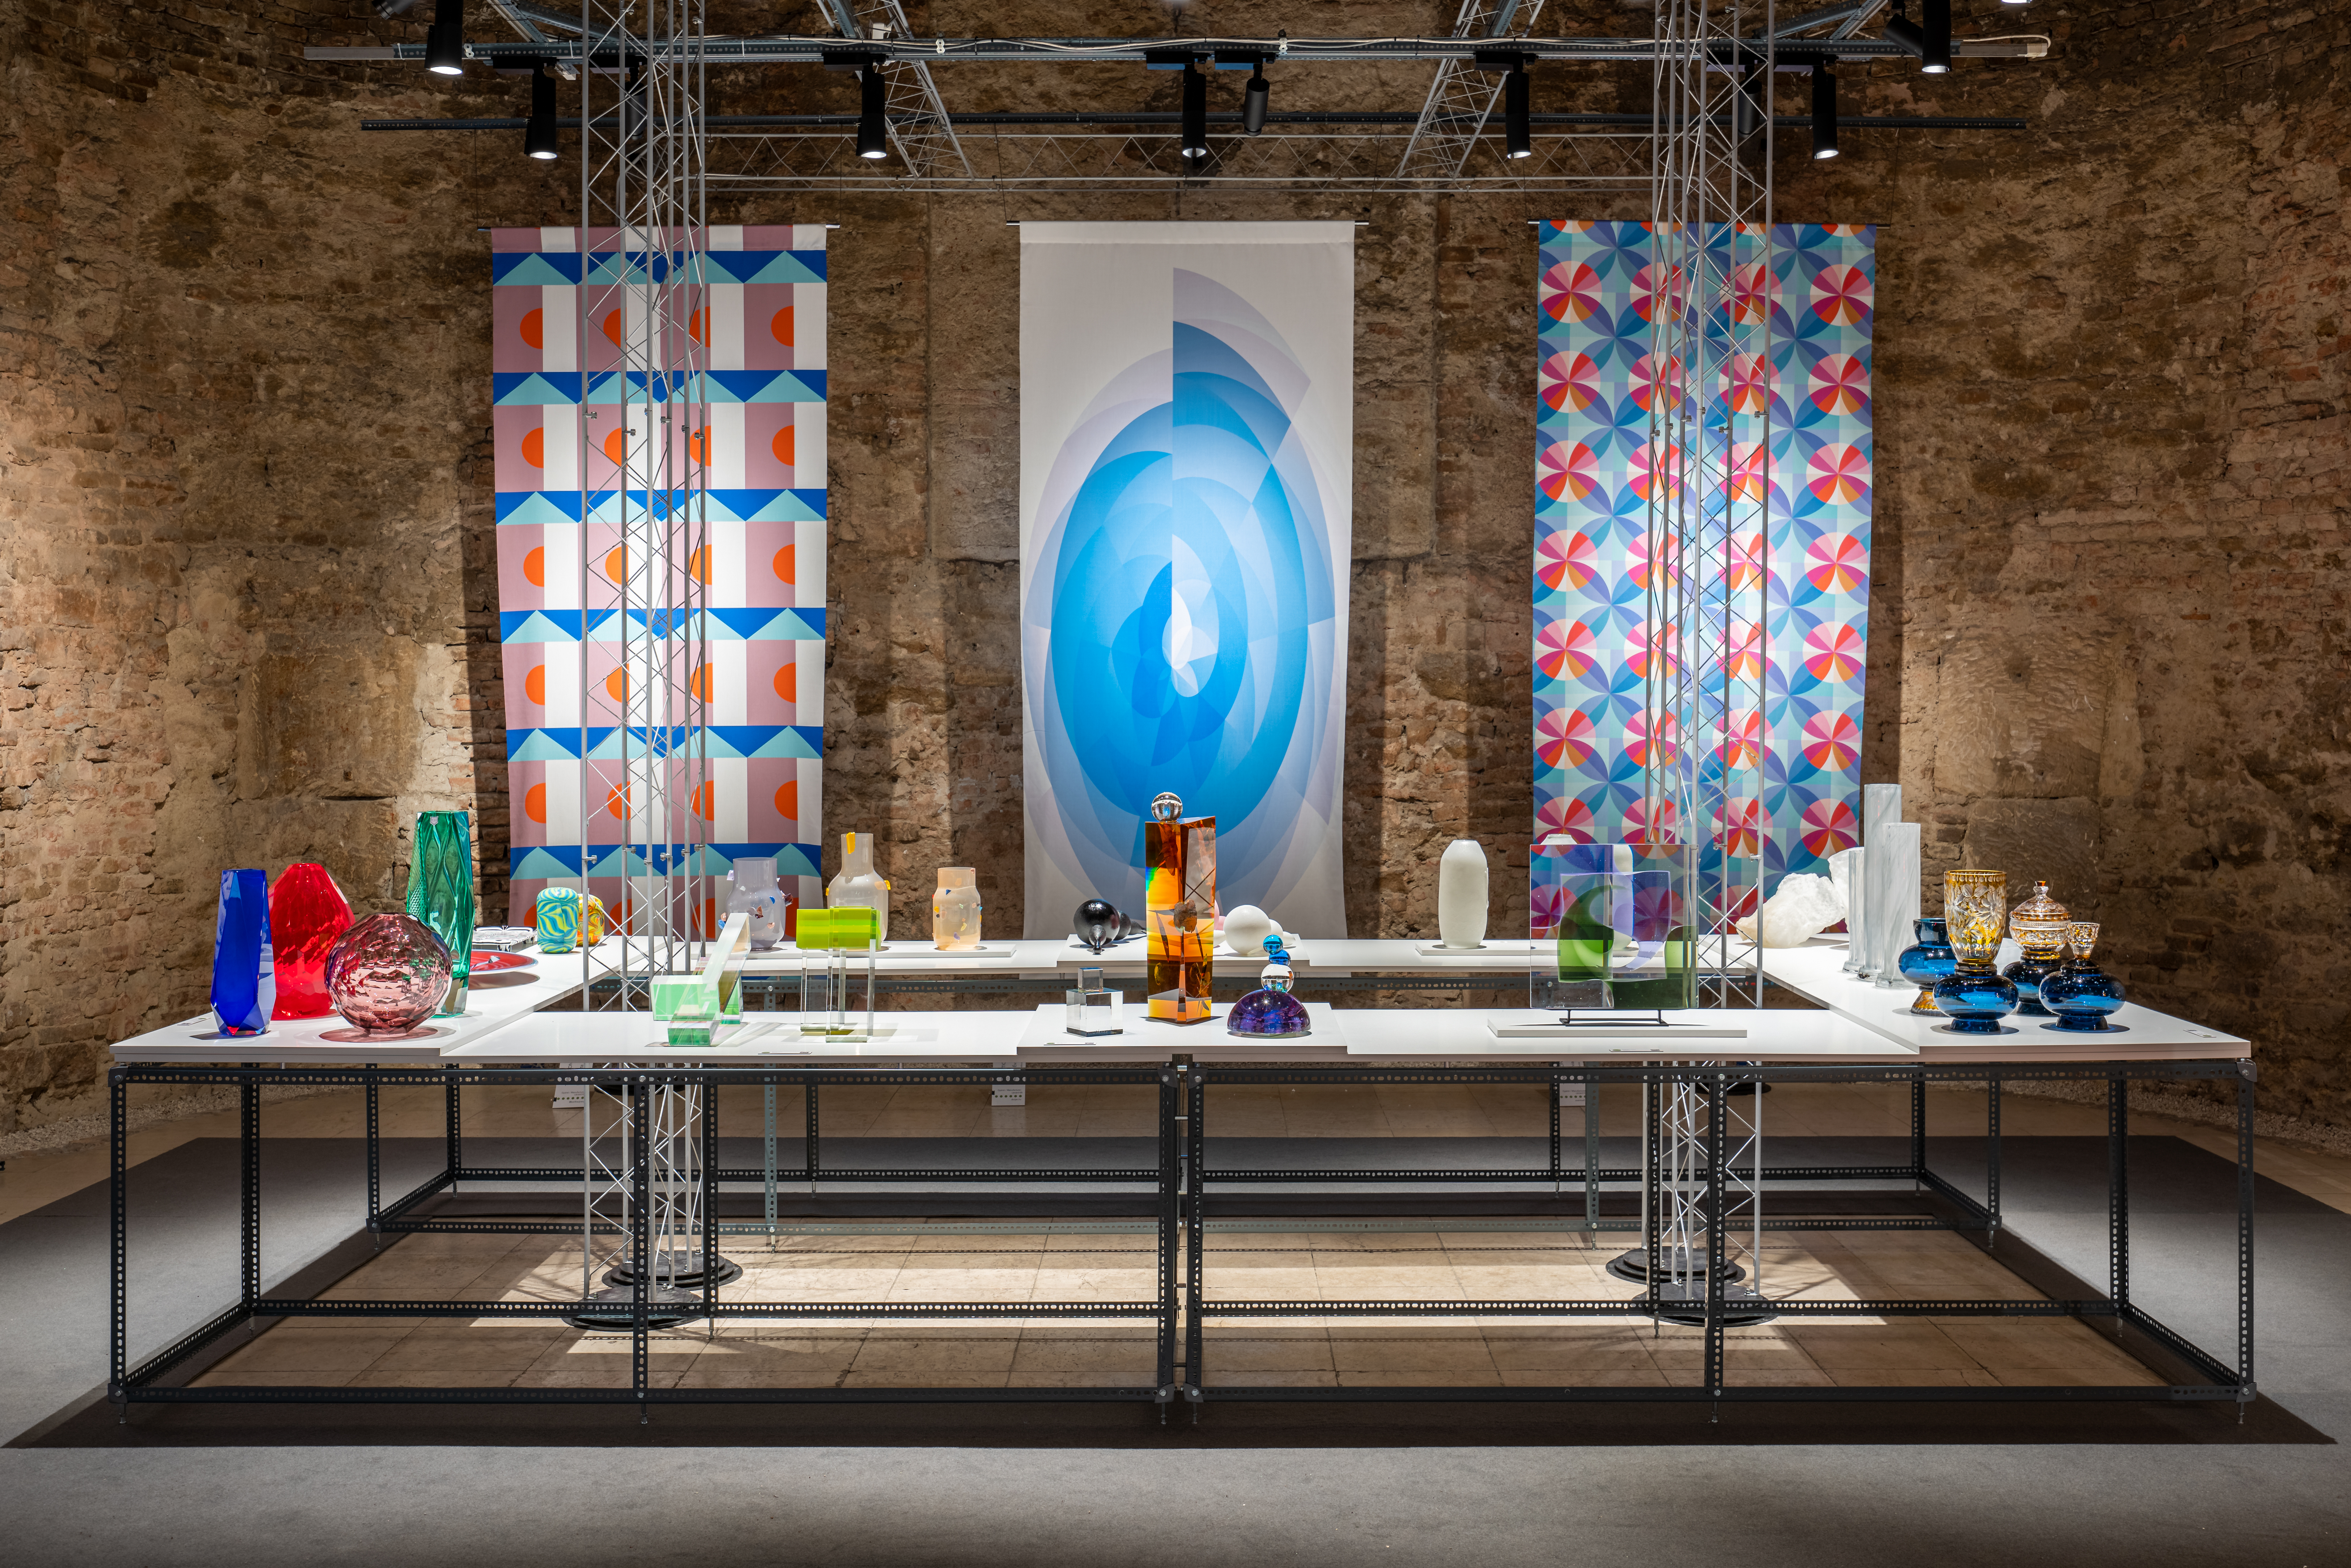 24 ország 214 alkotójának munkái, az üvegtől a kisbútorig – A régió egyik legjobb dizájntárlata a Kiscelli Múzeumban